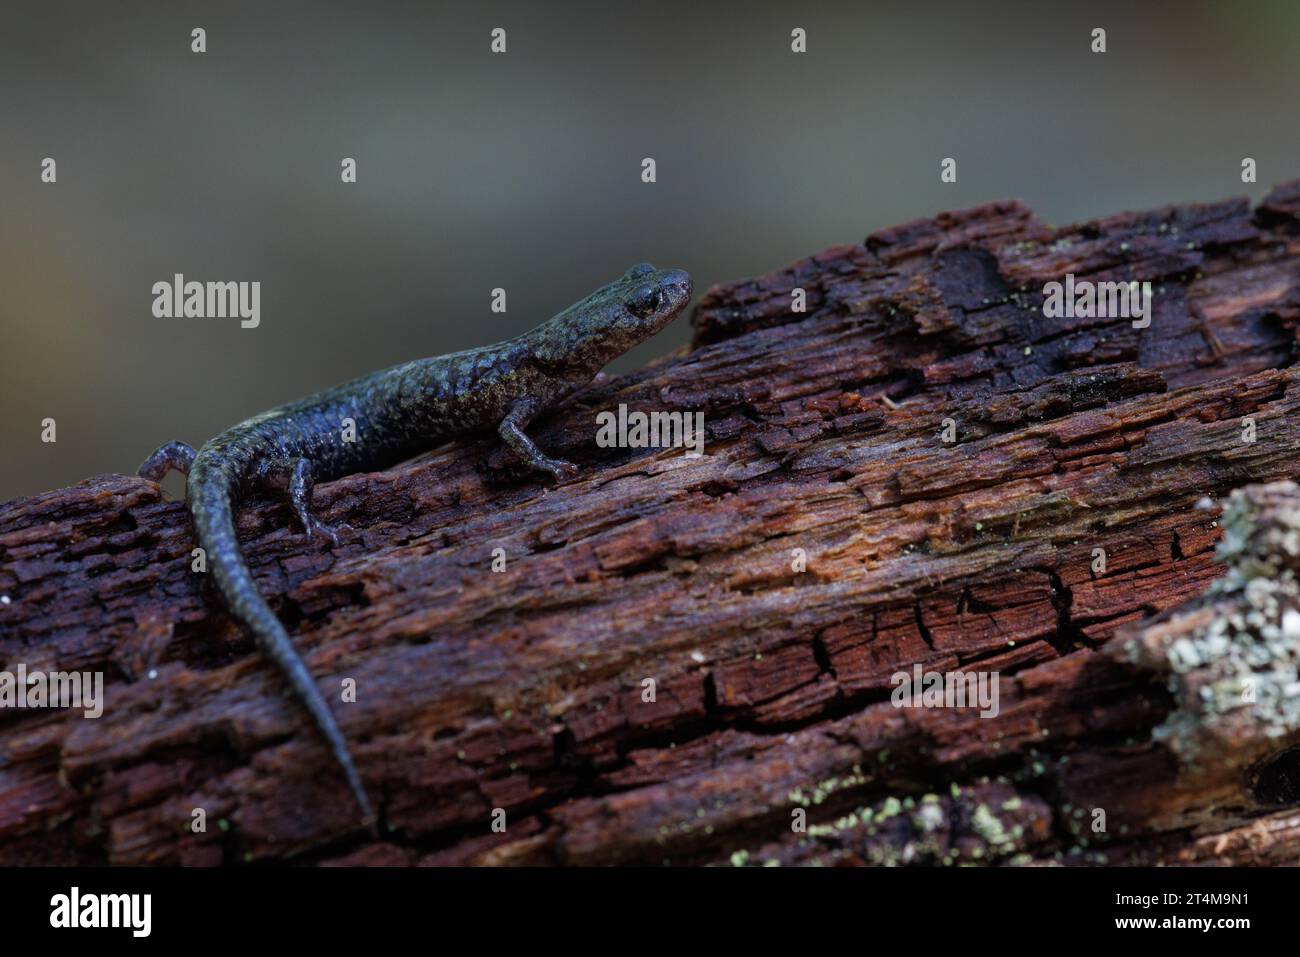 Sacramento Mountain Salamander, New mexico, USA. Stock Photo